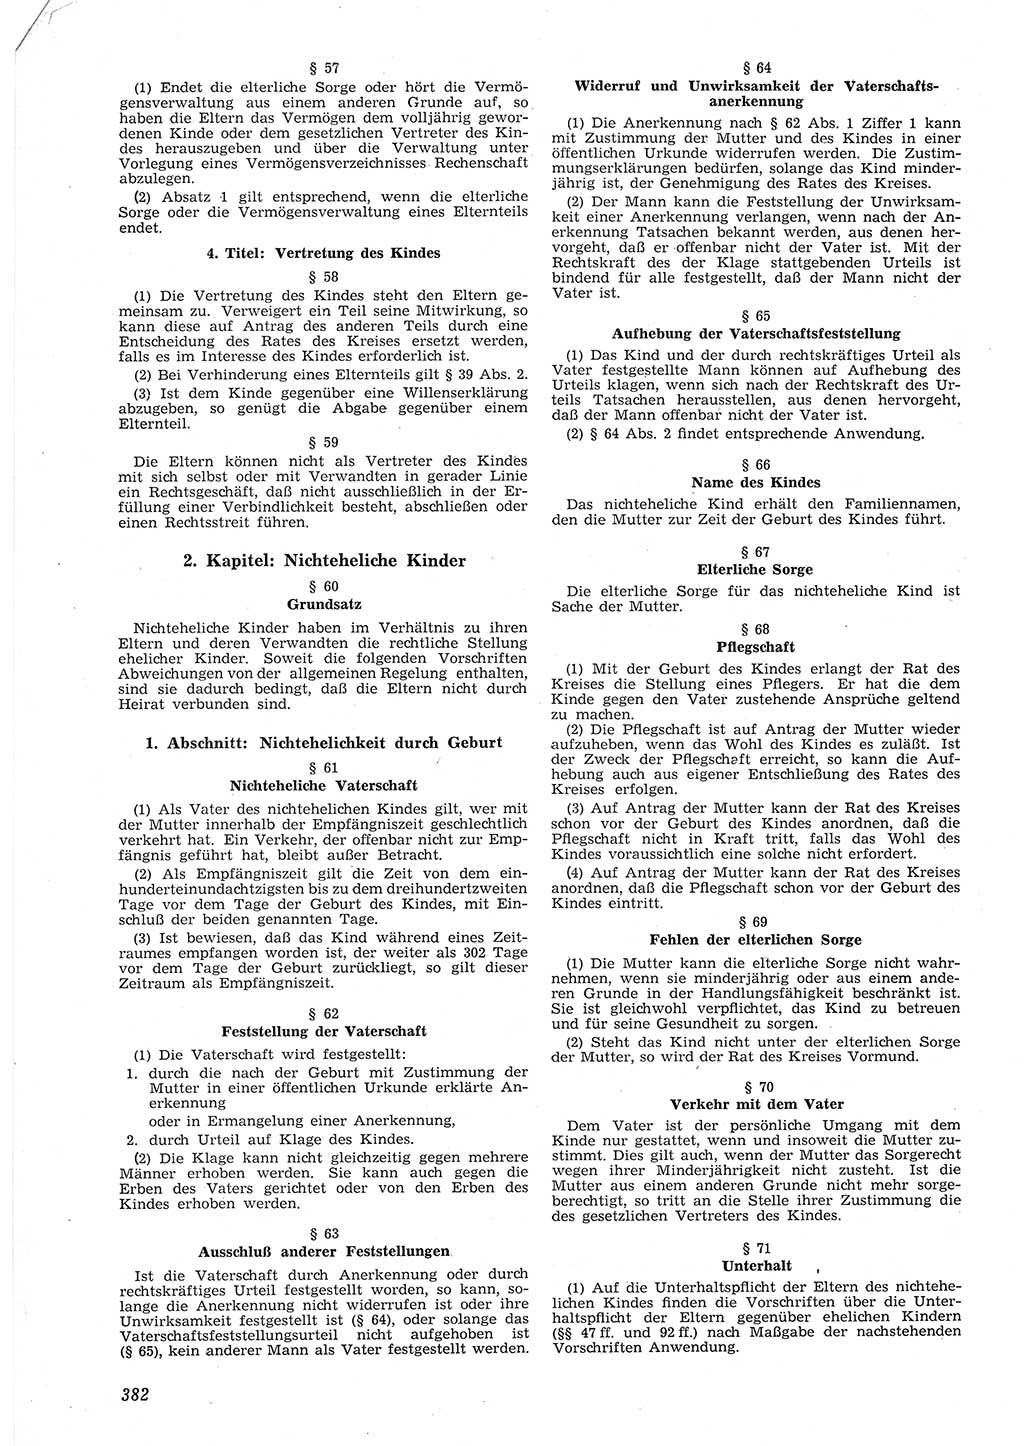 Neue Justiz (NJ), Zeitschrift für Recht und Rechtswissenschaft [Deutsche Demokratische Republik (DDR)], 8. Jahrgang 1954, Seite 382 (NJ DDR 1954, S. 382)